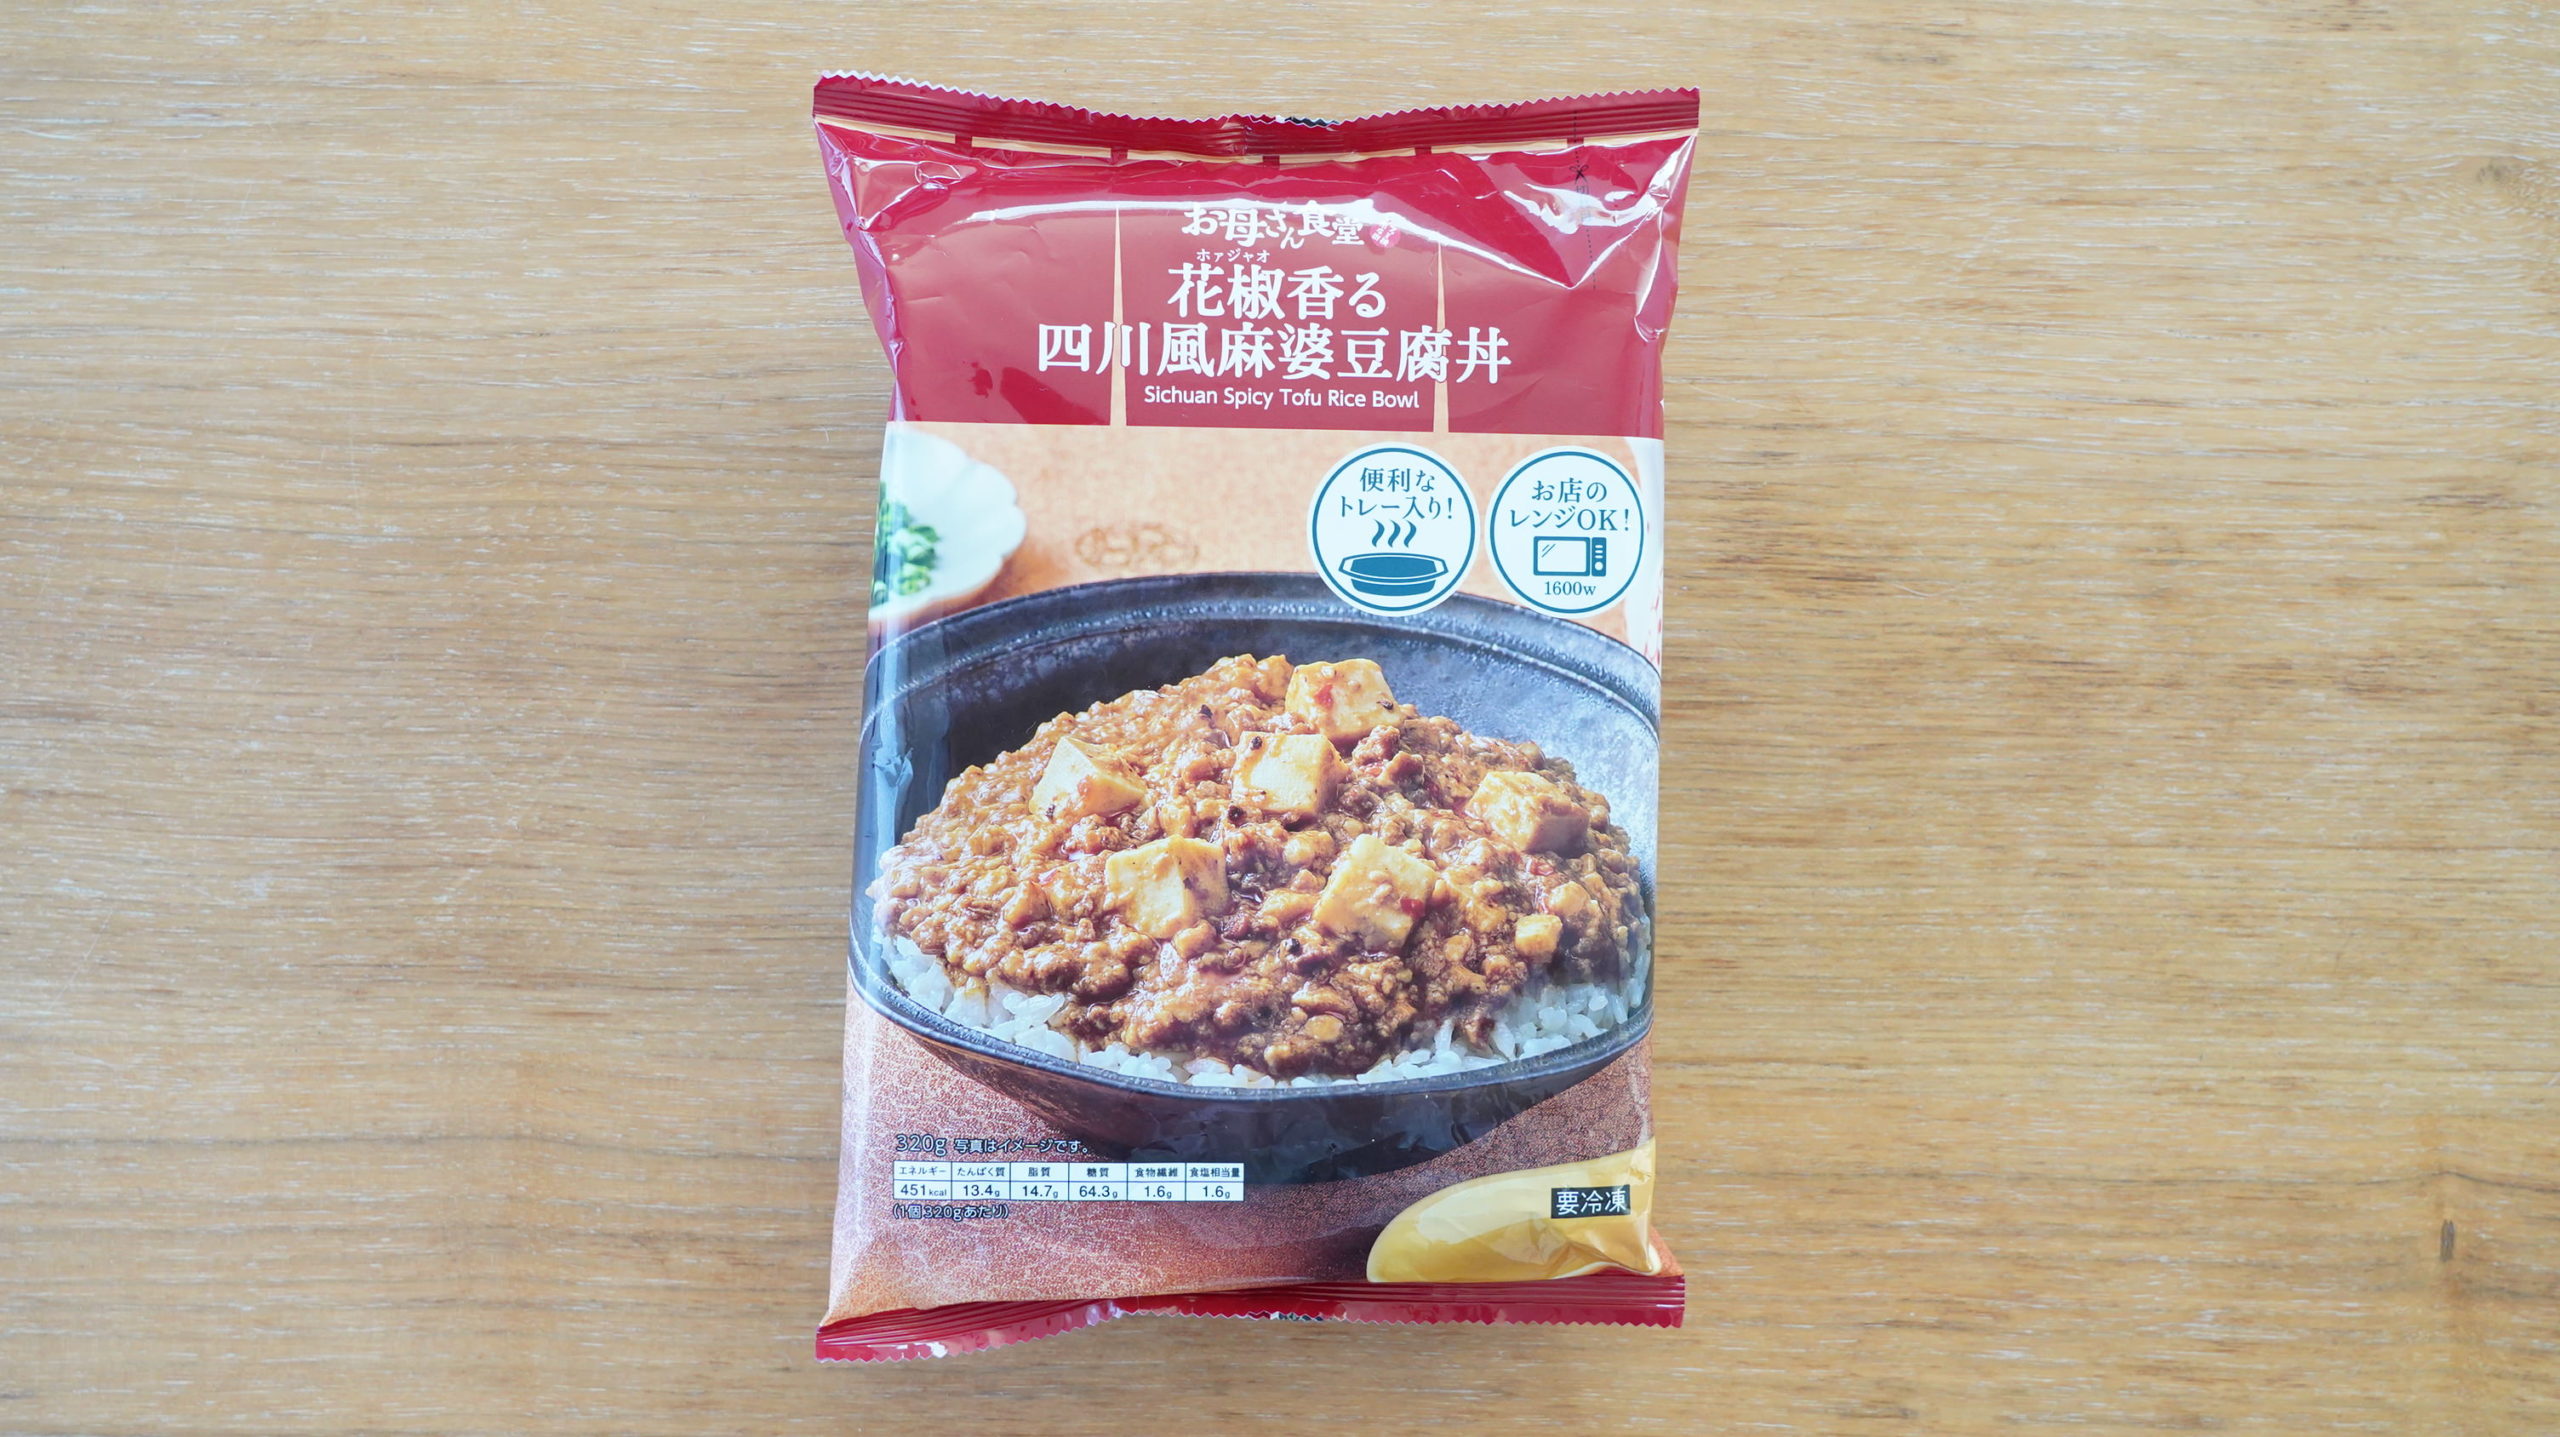 ファミリーマートの冷凍食品「花椒香る四川風麻婆豆腐丼」のパッケージの写真